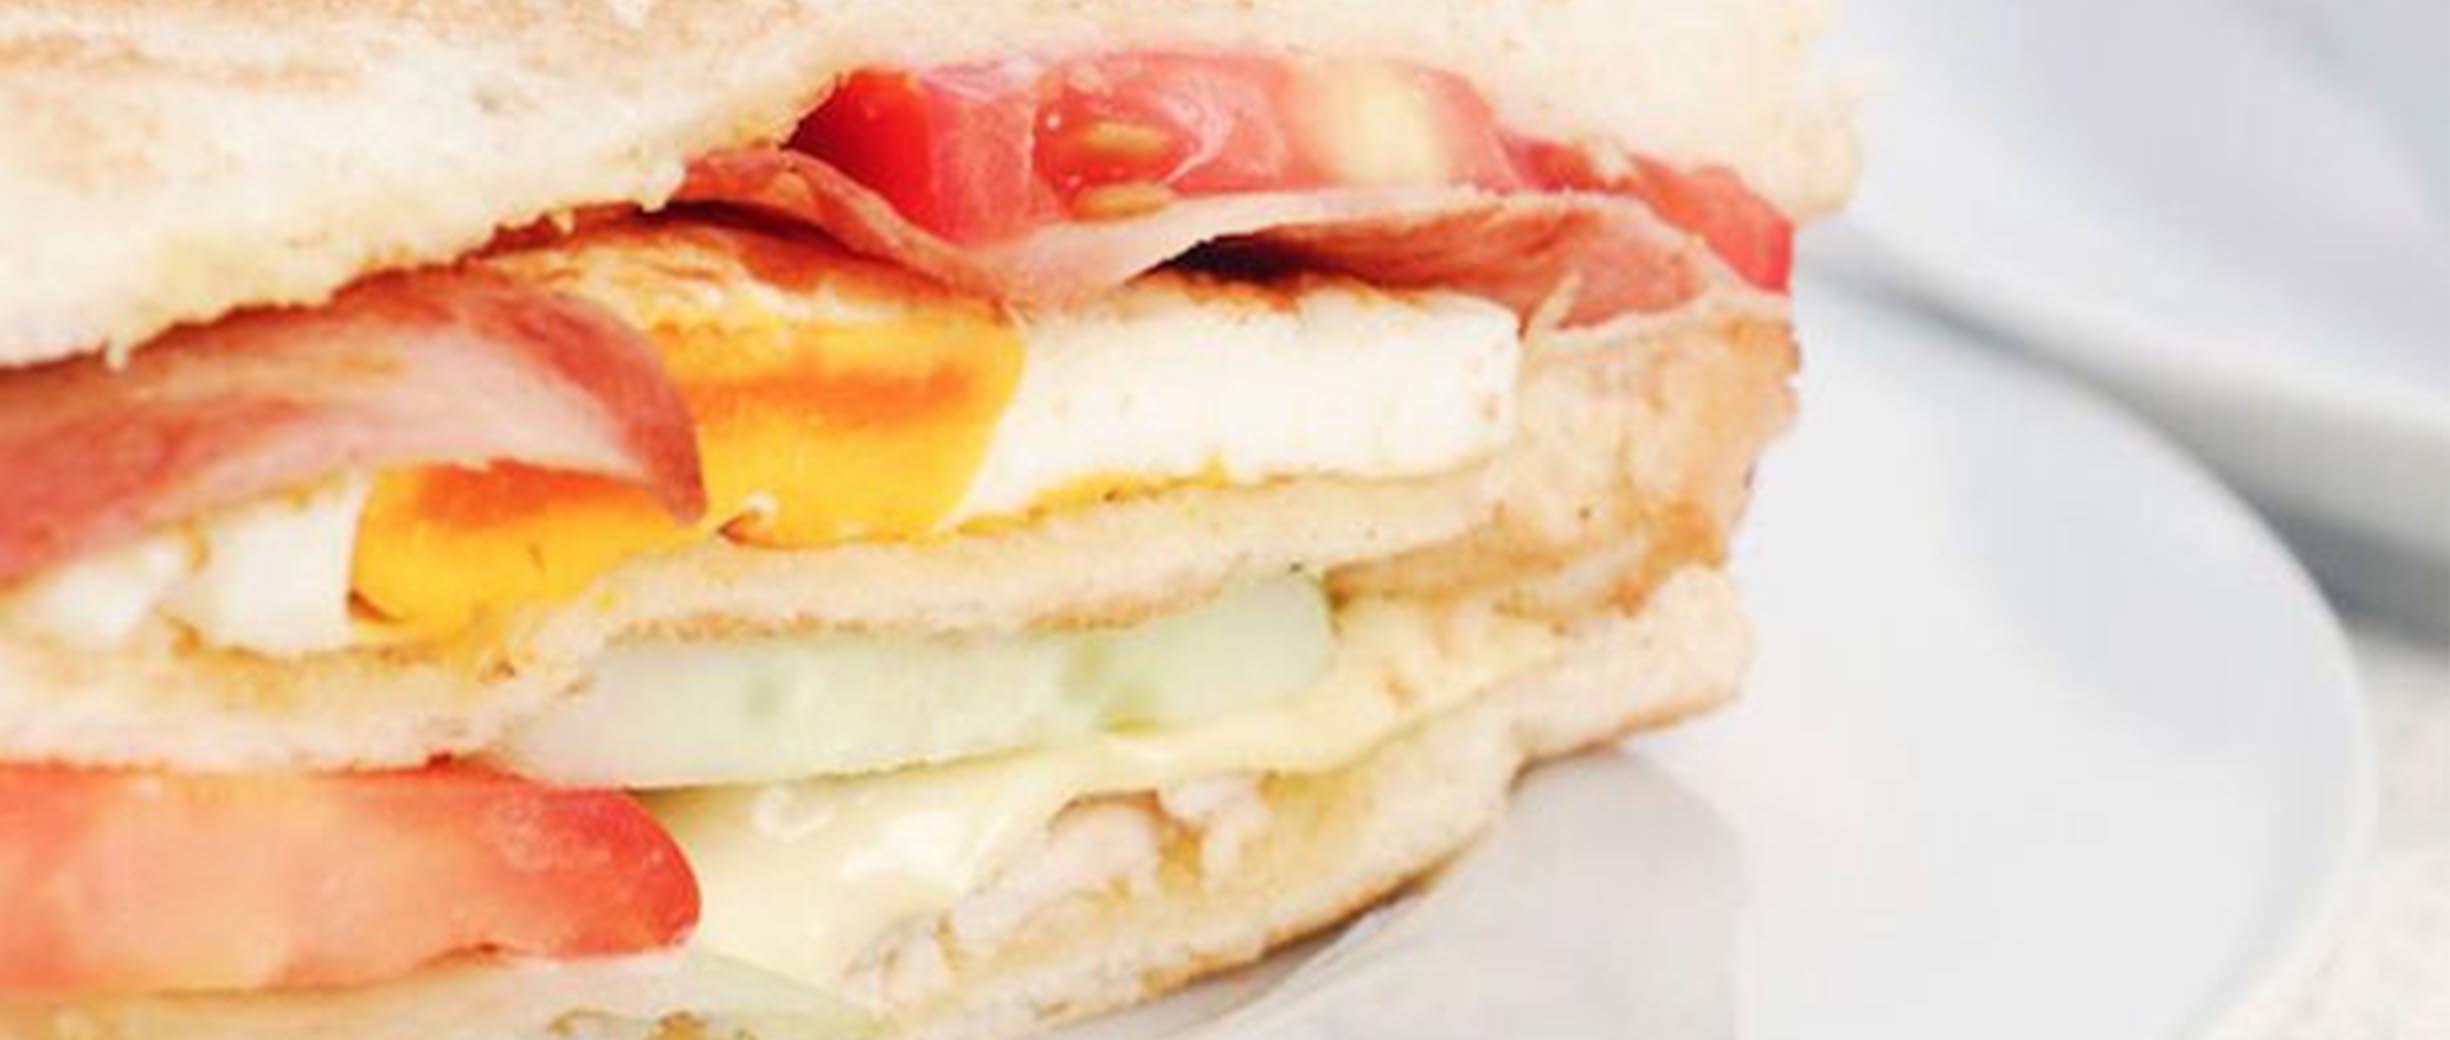 “UNREAL” Ham Sandwiches